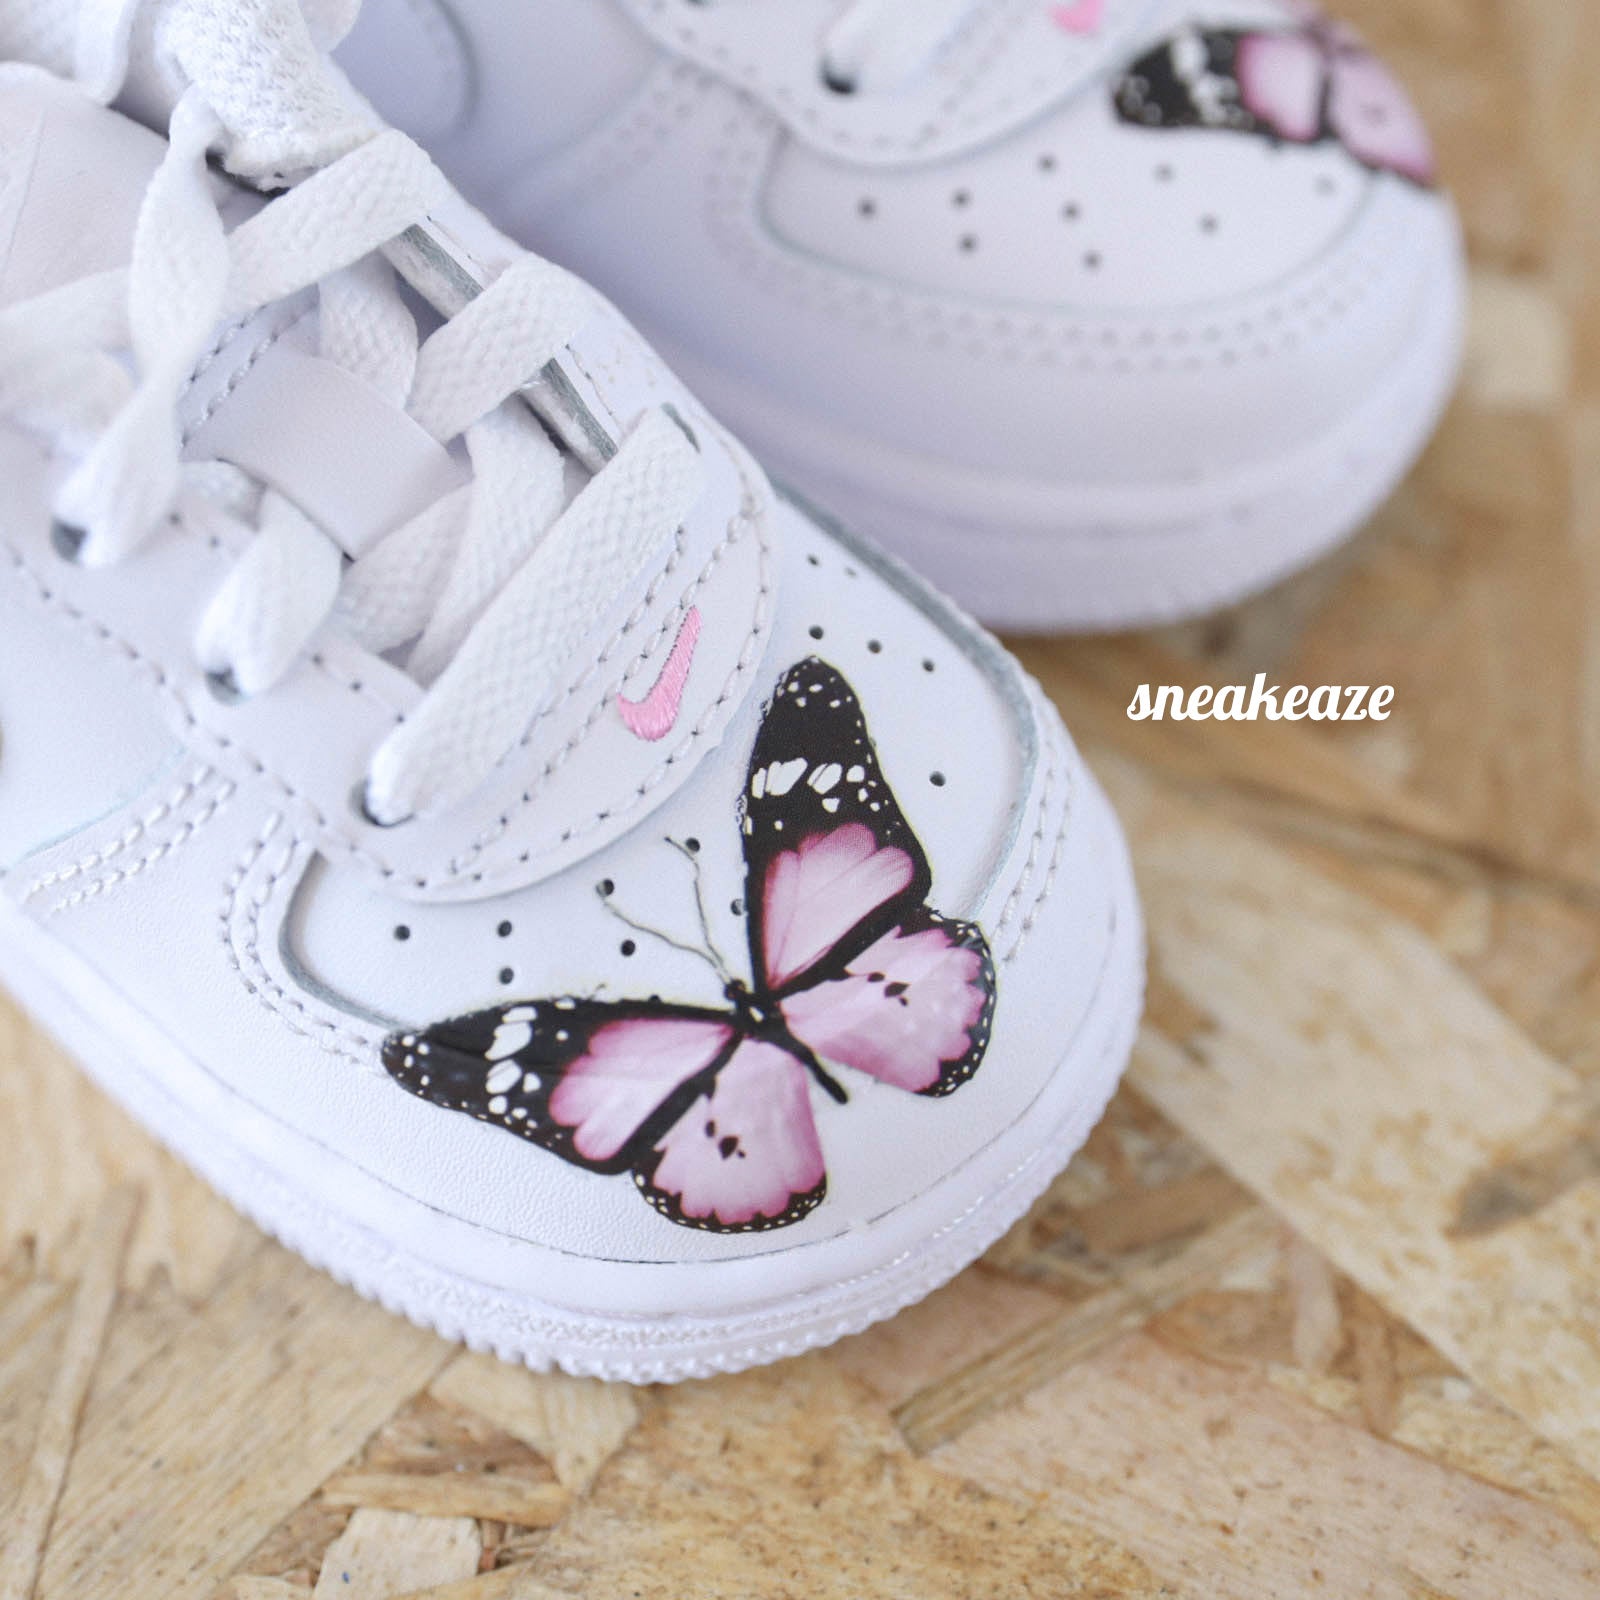 baskets nike air force 1 custom pour les enfants ou bébé - motifs papillons et personnalisation avec le prénom - sneakeaze customs skz